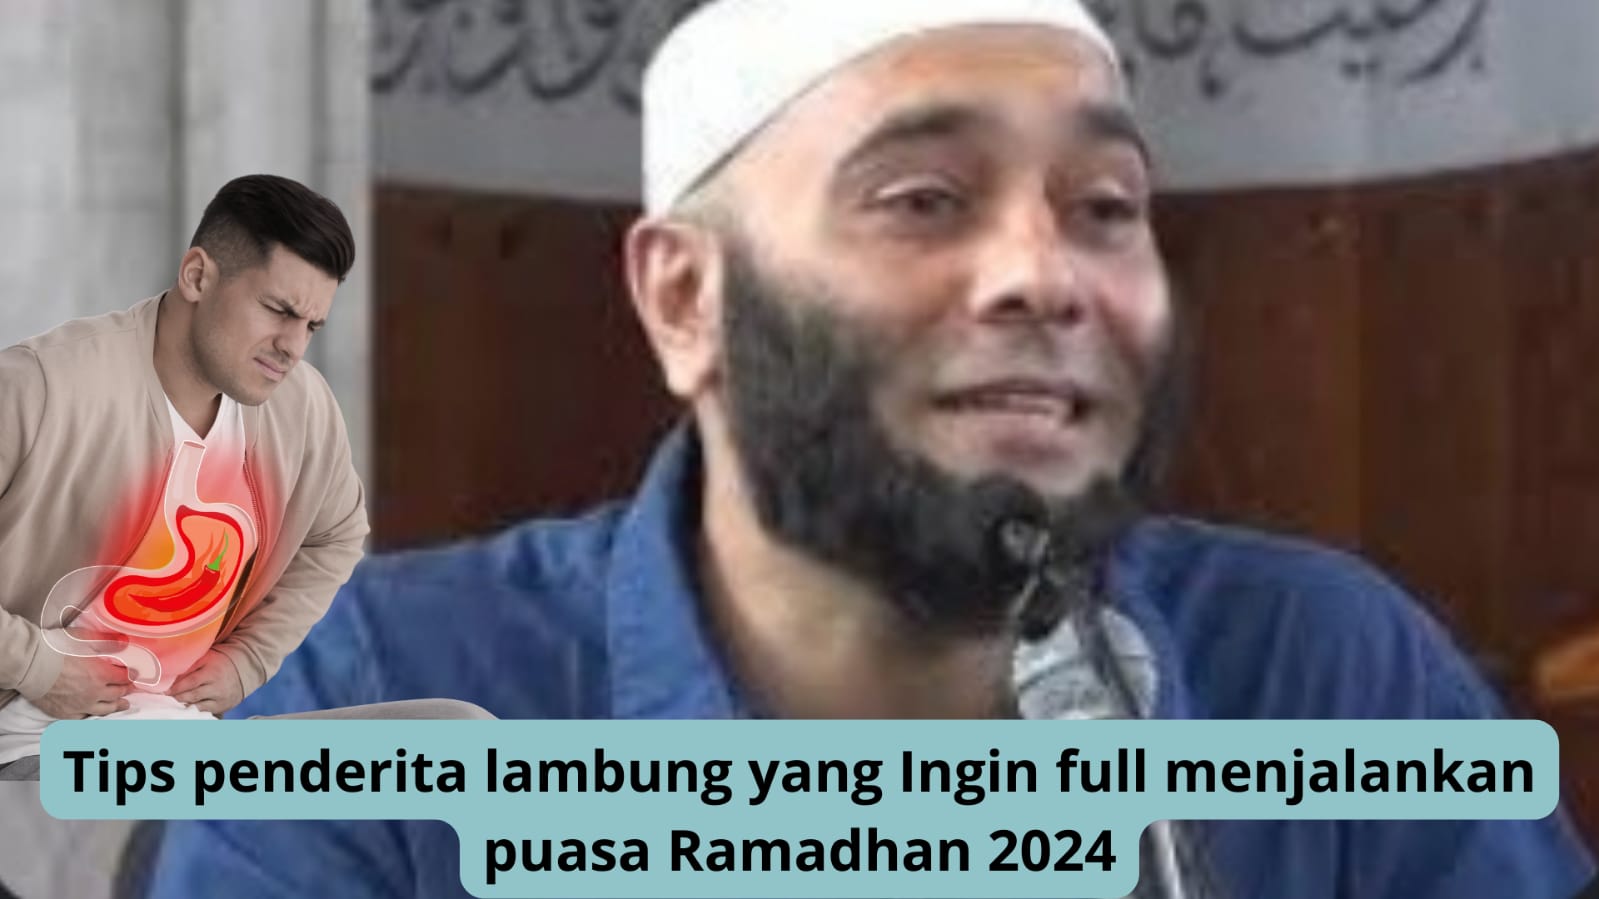 dr. Zaidul Akbar Berbagi Tips Bagi Penderita Lambung yang Ingin Full Menjalankan Puasa Ramadhan 2024